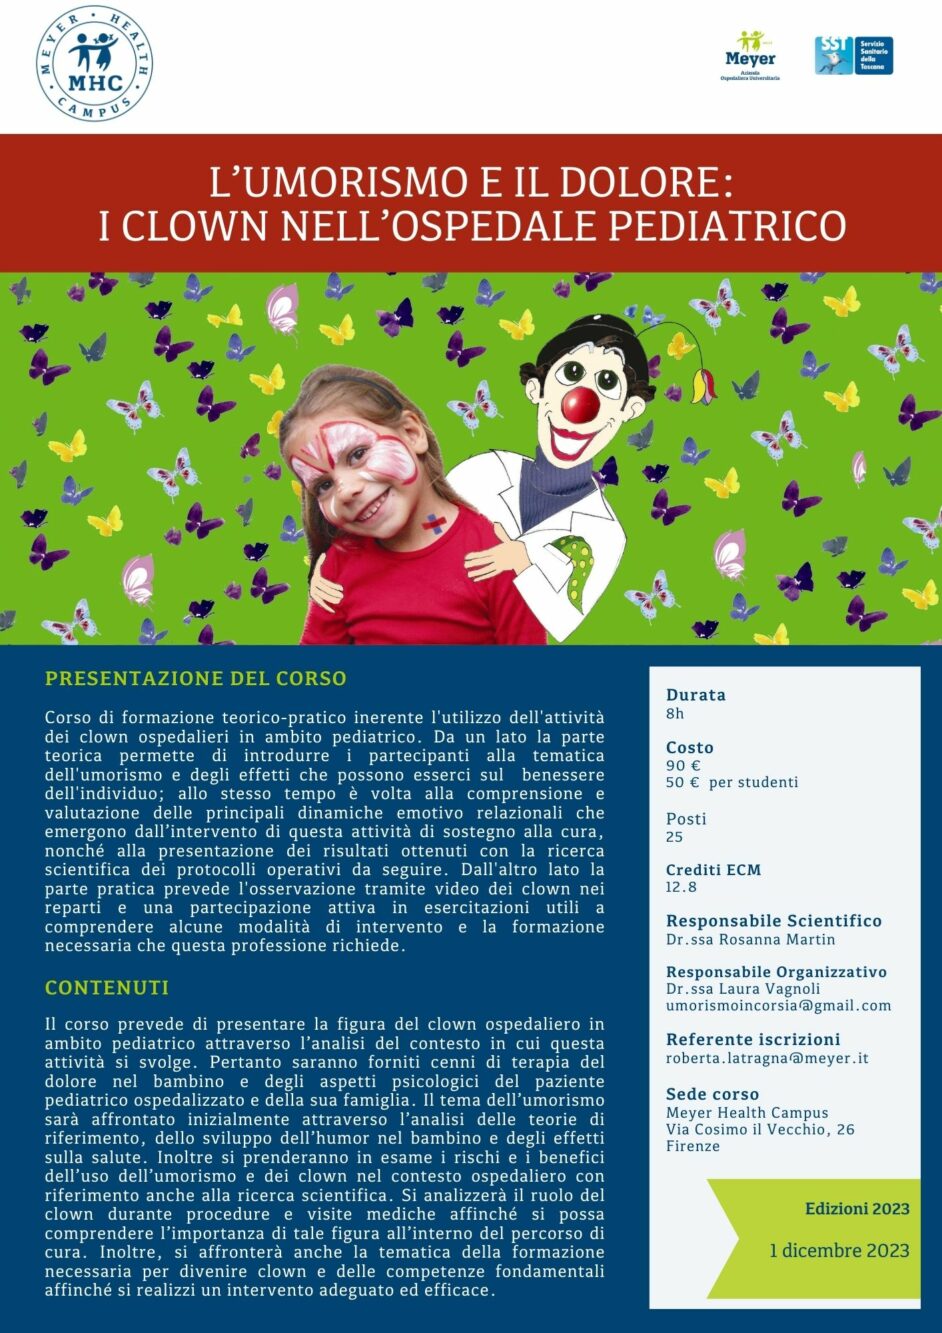 L’umorismo e il dolore: i clown nell’Ospedale Pediatrico (1 dicembre 2023)